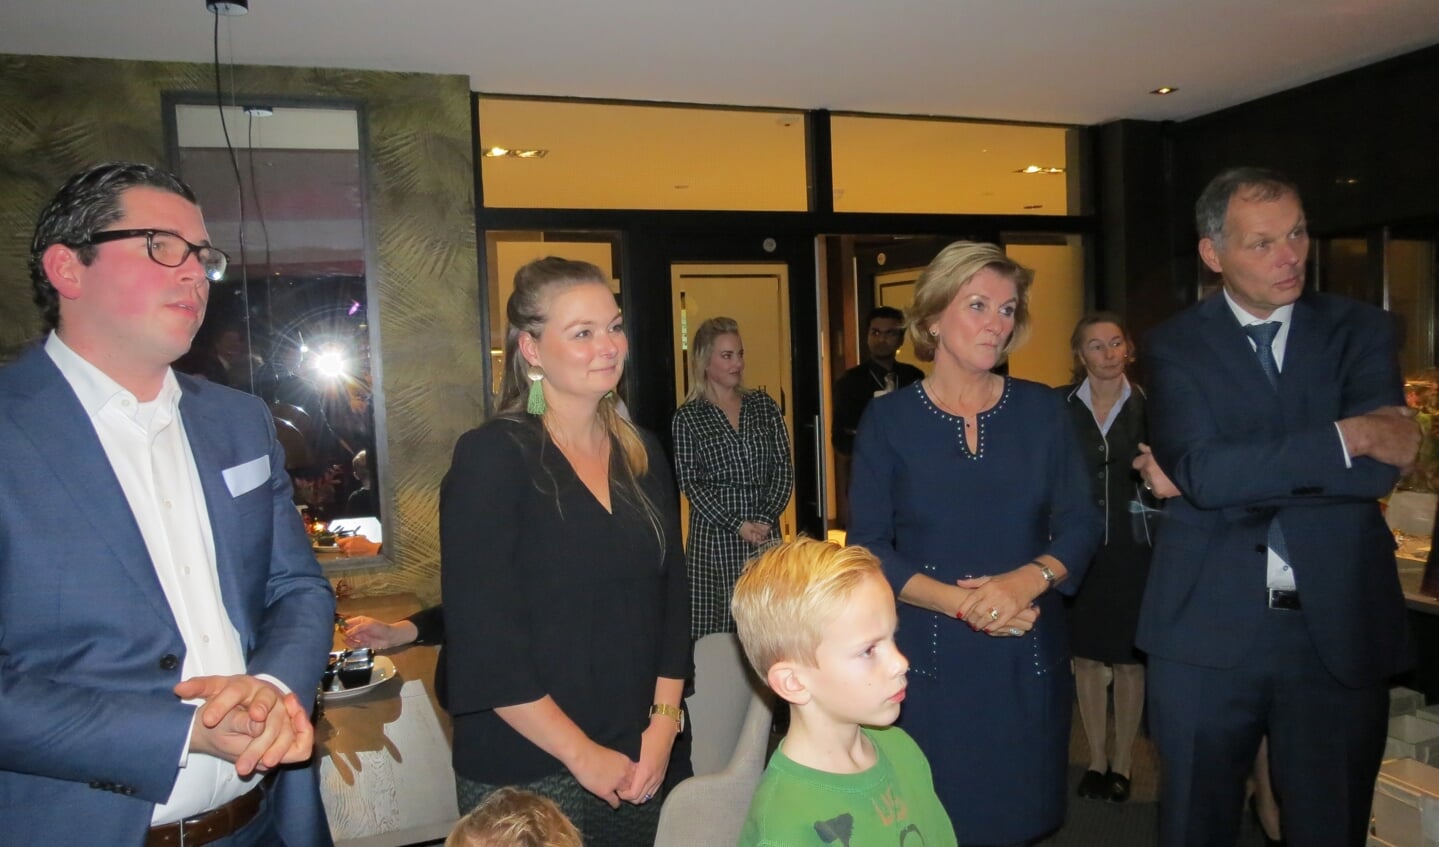 Folkert Deenik, Anne van der Valk, en Els en Klaas van der Valk luisteren naar de toespraak van de burgemeester.